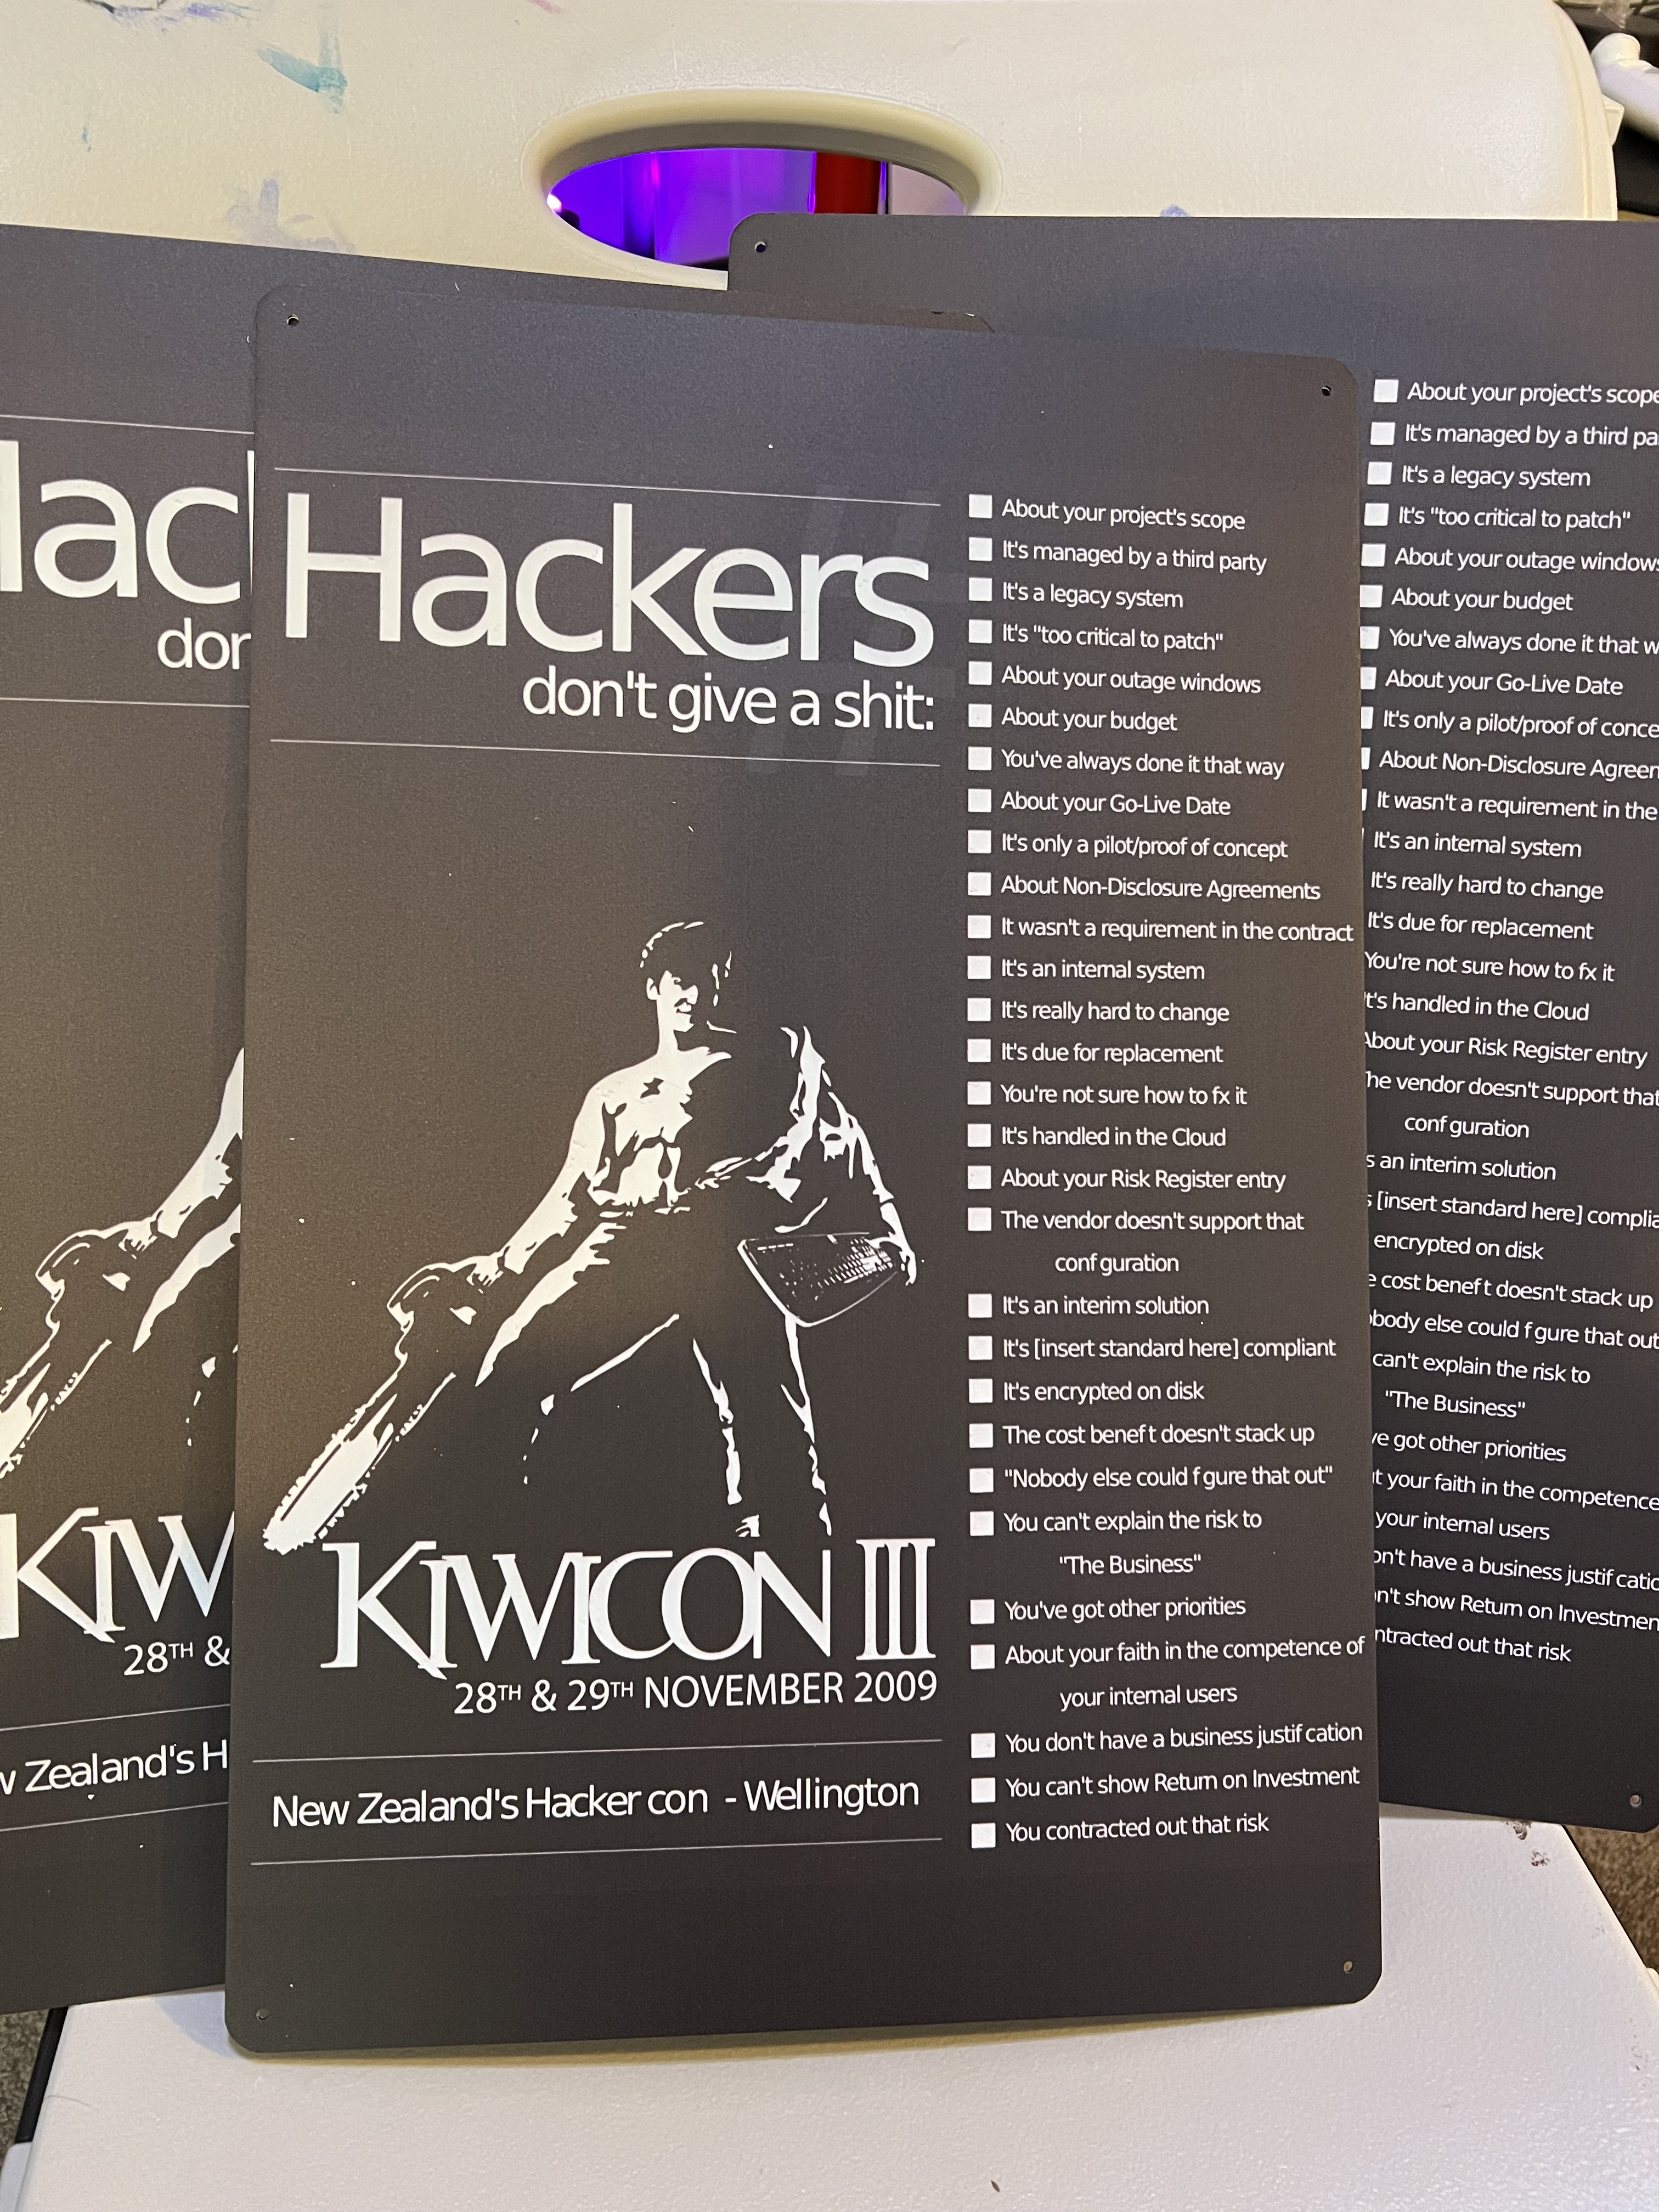 Wellington hacker (versão original) 